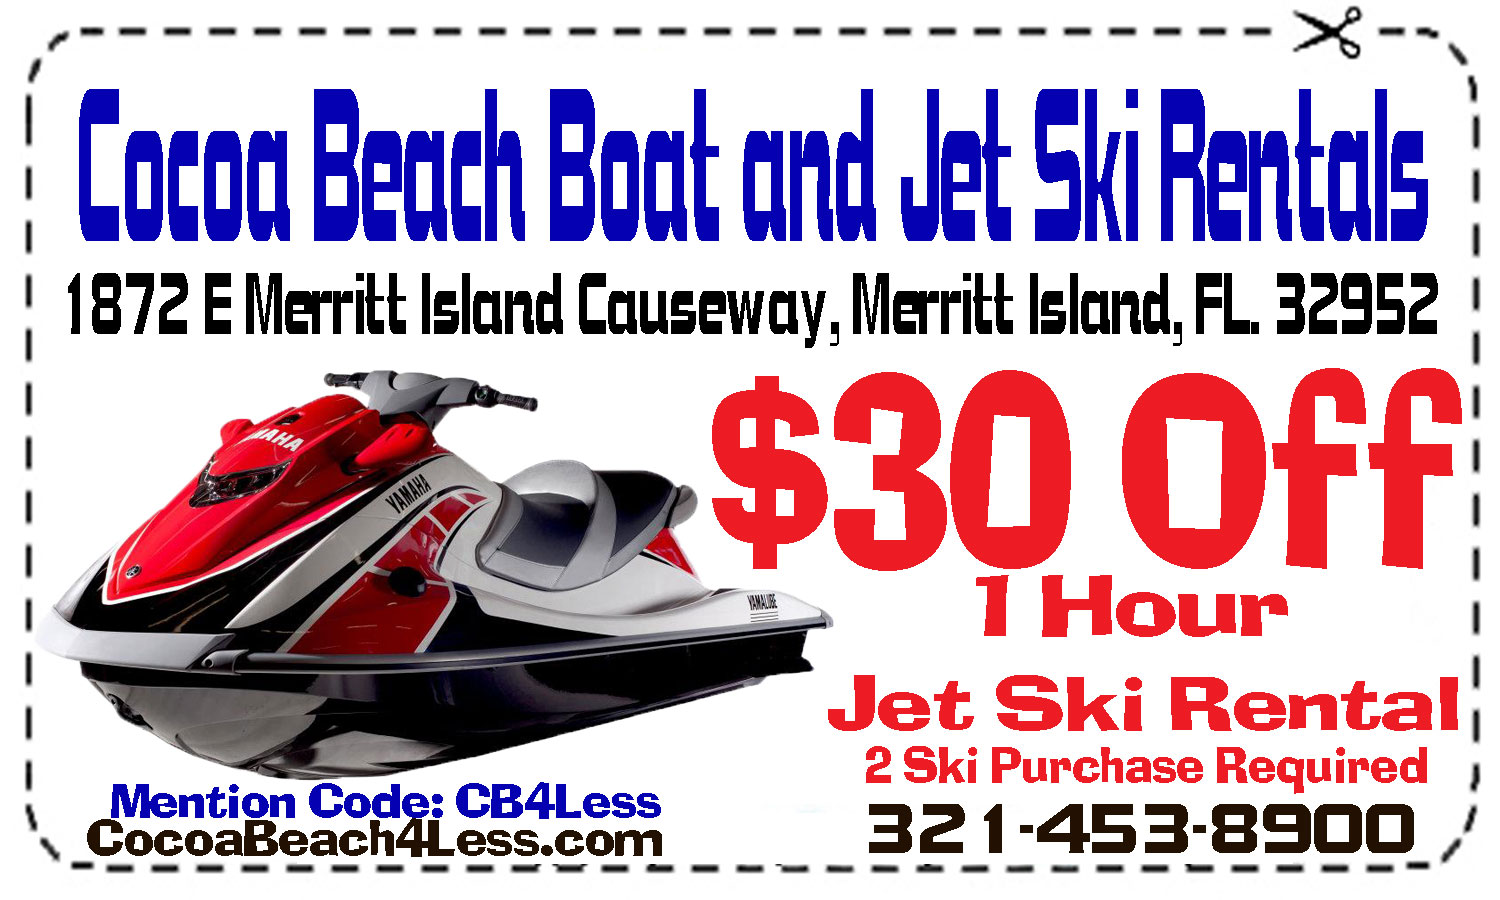 Cocoa Beach Jet Ski Rentals - Cocoa Beach Jet Ski Rental Coupon –  $30 Jet Ski Rentals for 2 $30 coupon